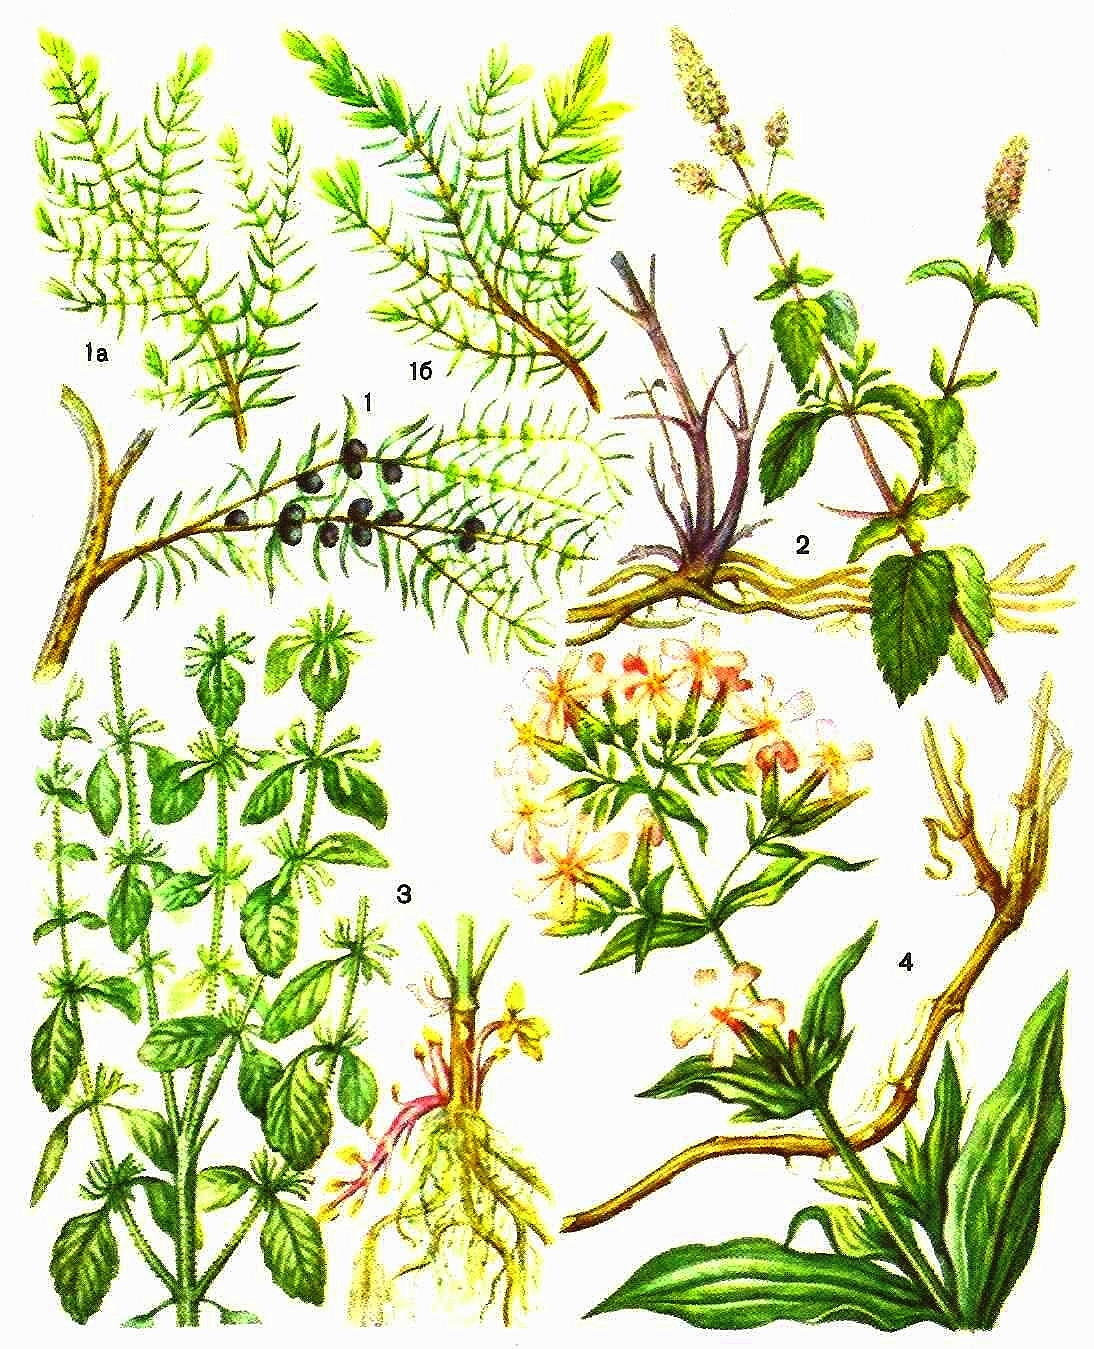 1 - можжевельник обыкновенный (а - ветвь женского растения, б - ветвь мужского растения); 2 - мята перечная; 3 мелисса лекарственная; 4 - мыльнянка лекарственная